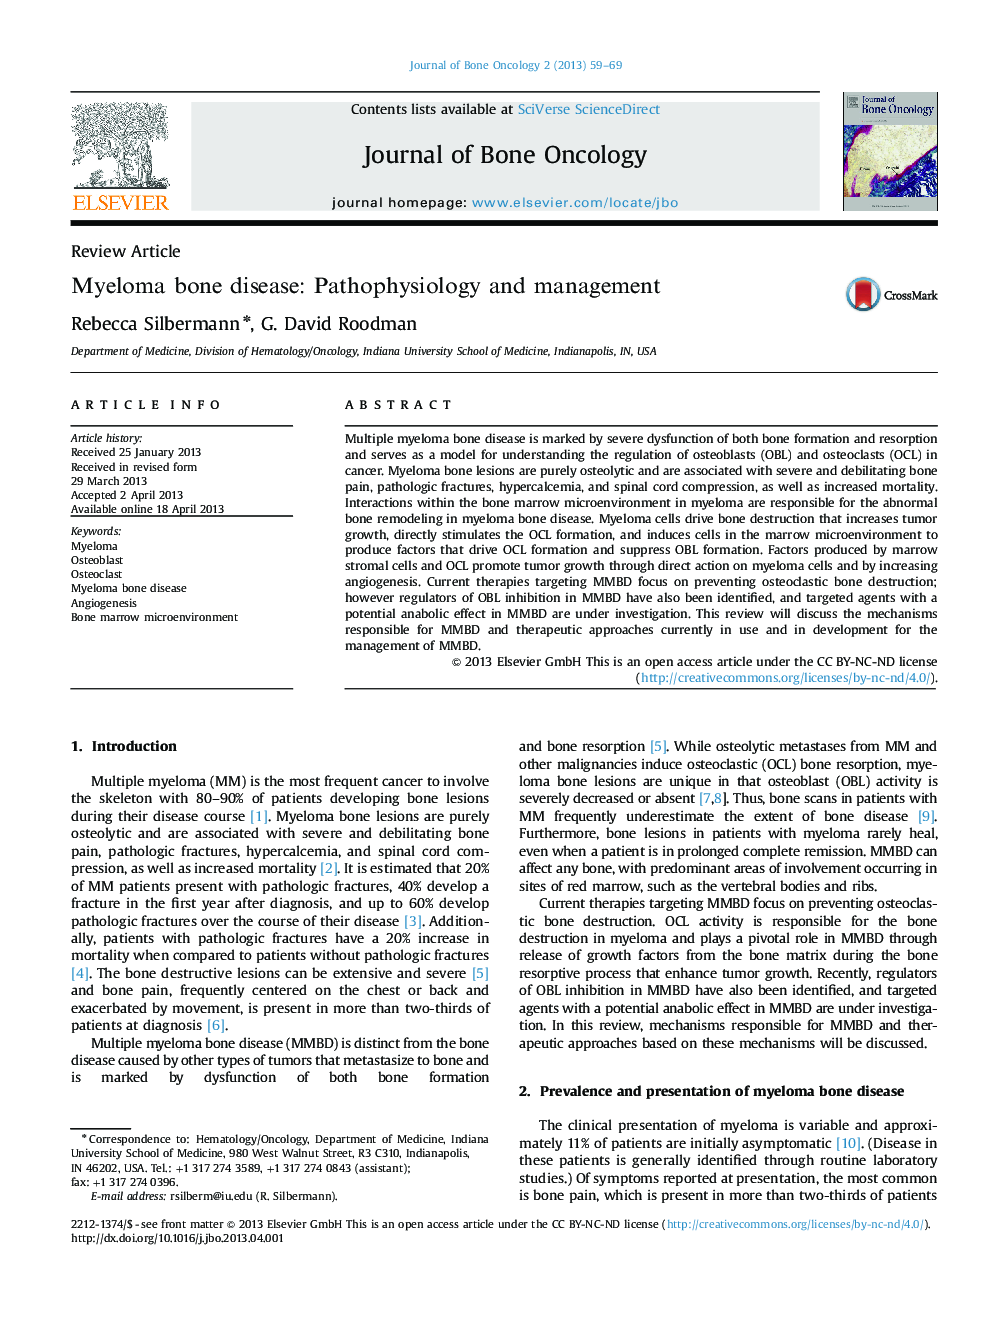 Myeloma bone disease: Pathophysiology and management